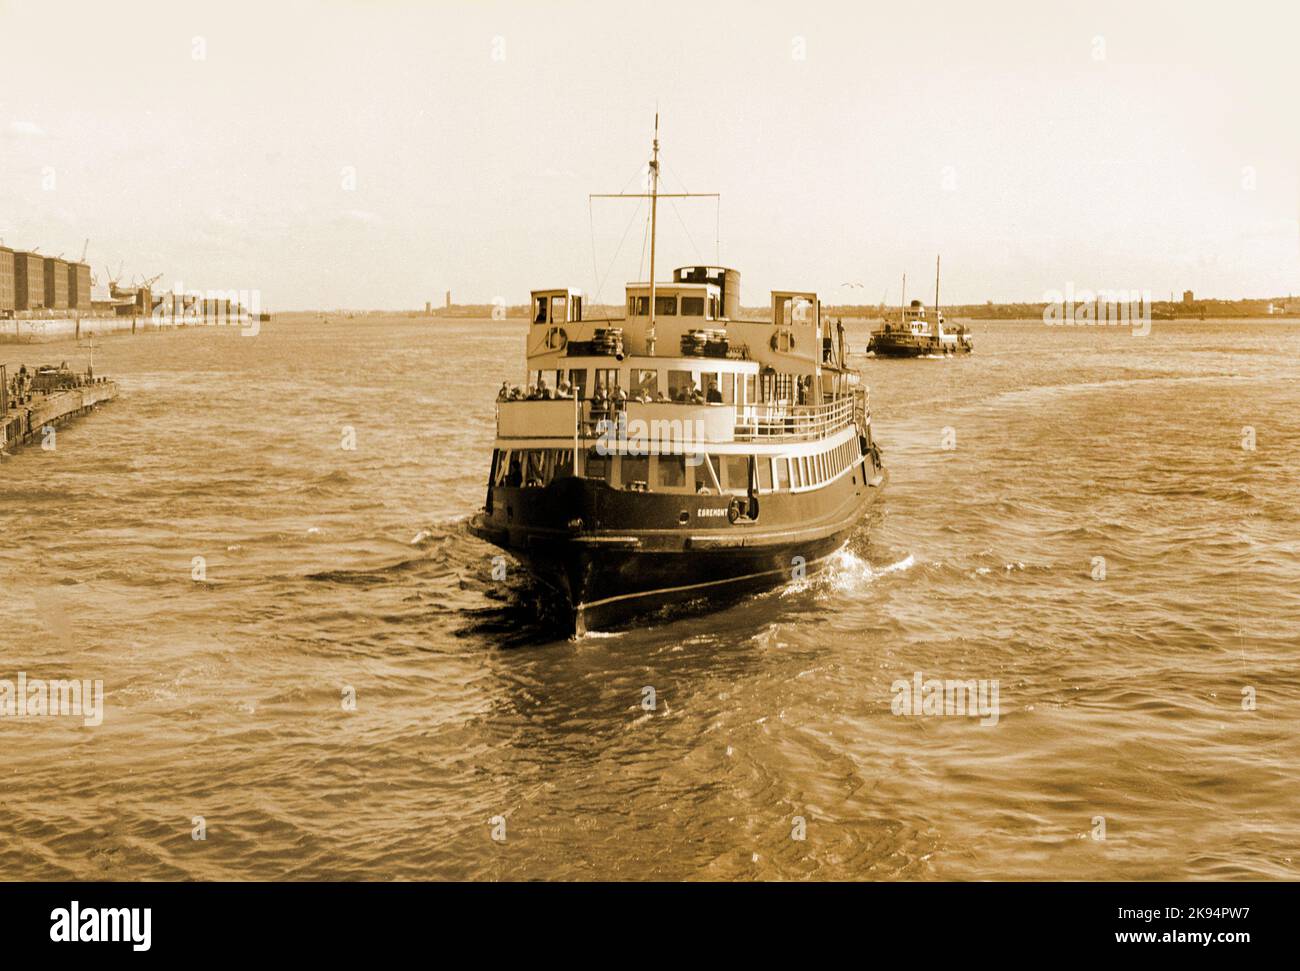 Vintage Liverpool 1968, zwei Fährschiffe eines ist die Egremont-Fähre, die über den Fluss Mersey fährt. Sepia-Bild, grober Körnungseffekt. Stockfoto